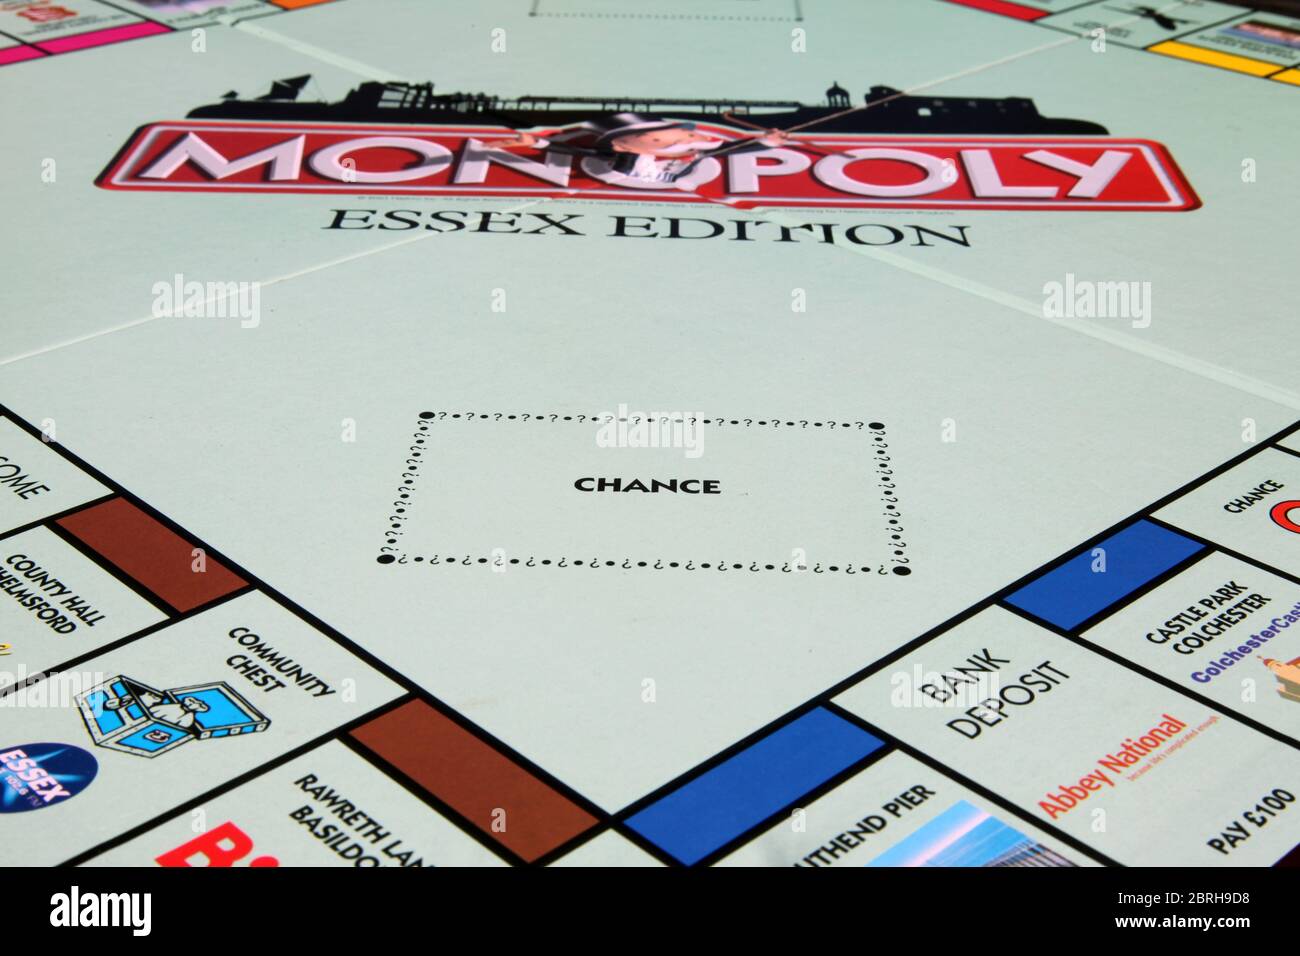 Chance Square sur Hasbro Monopoly Essex Edition jeu de carte chance carte, gros plan Banque D'Images